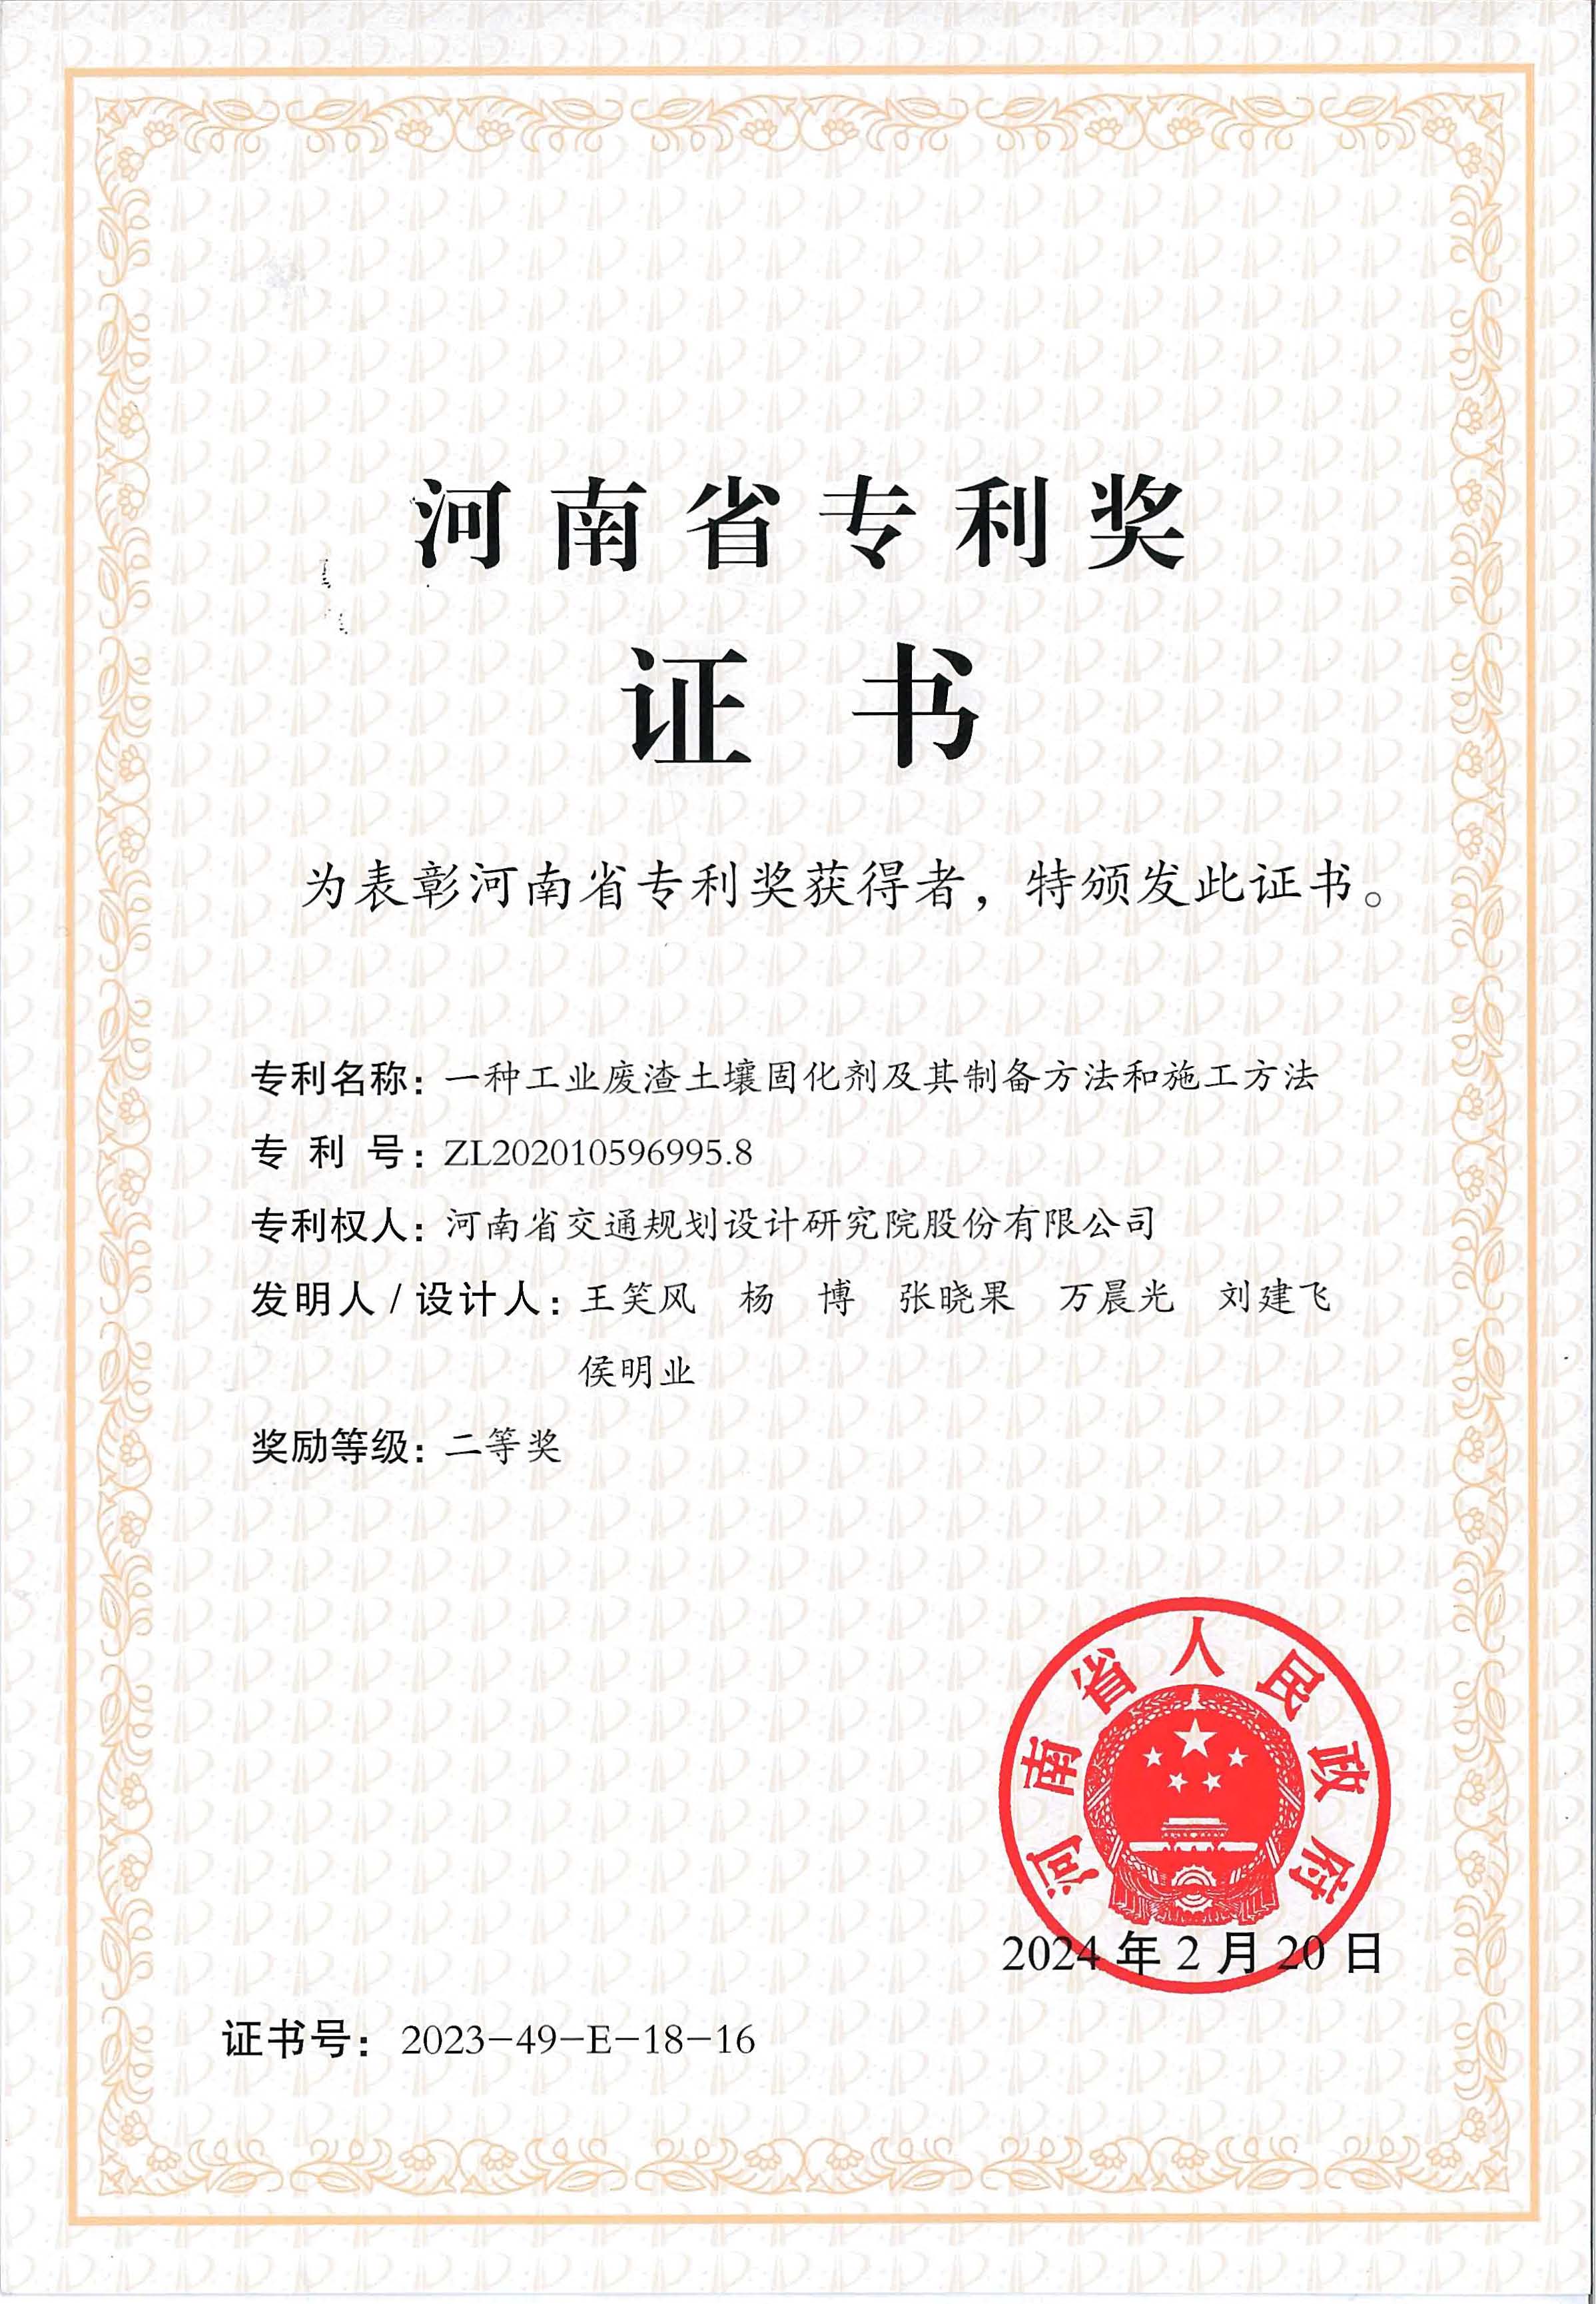 工業廢渣土壤改良固化材料研發成果榮獲第四屆河南省專利獎二等獎